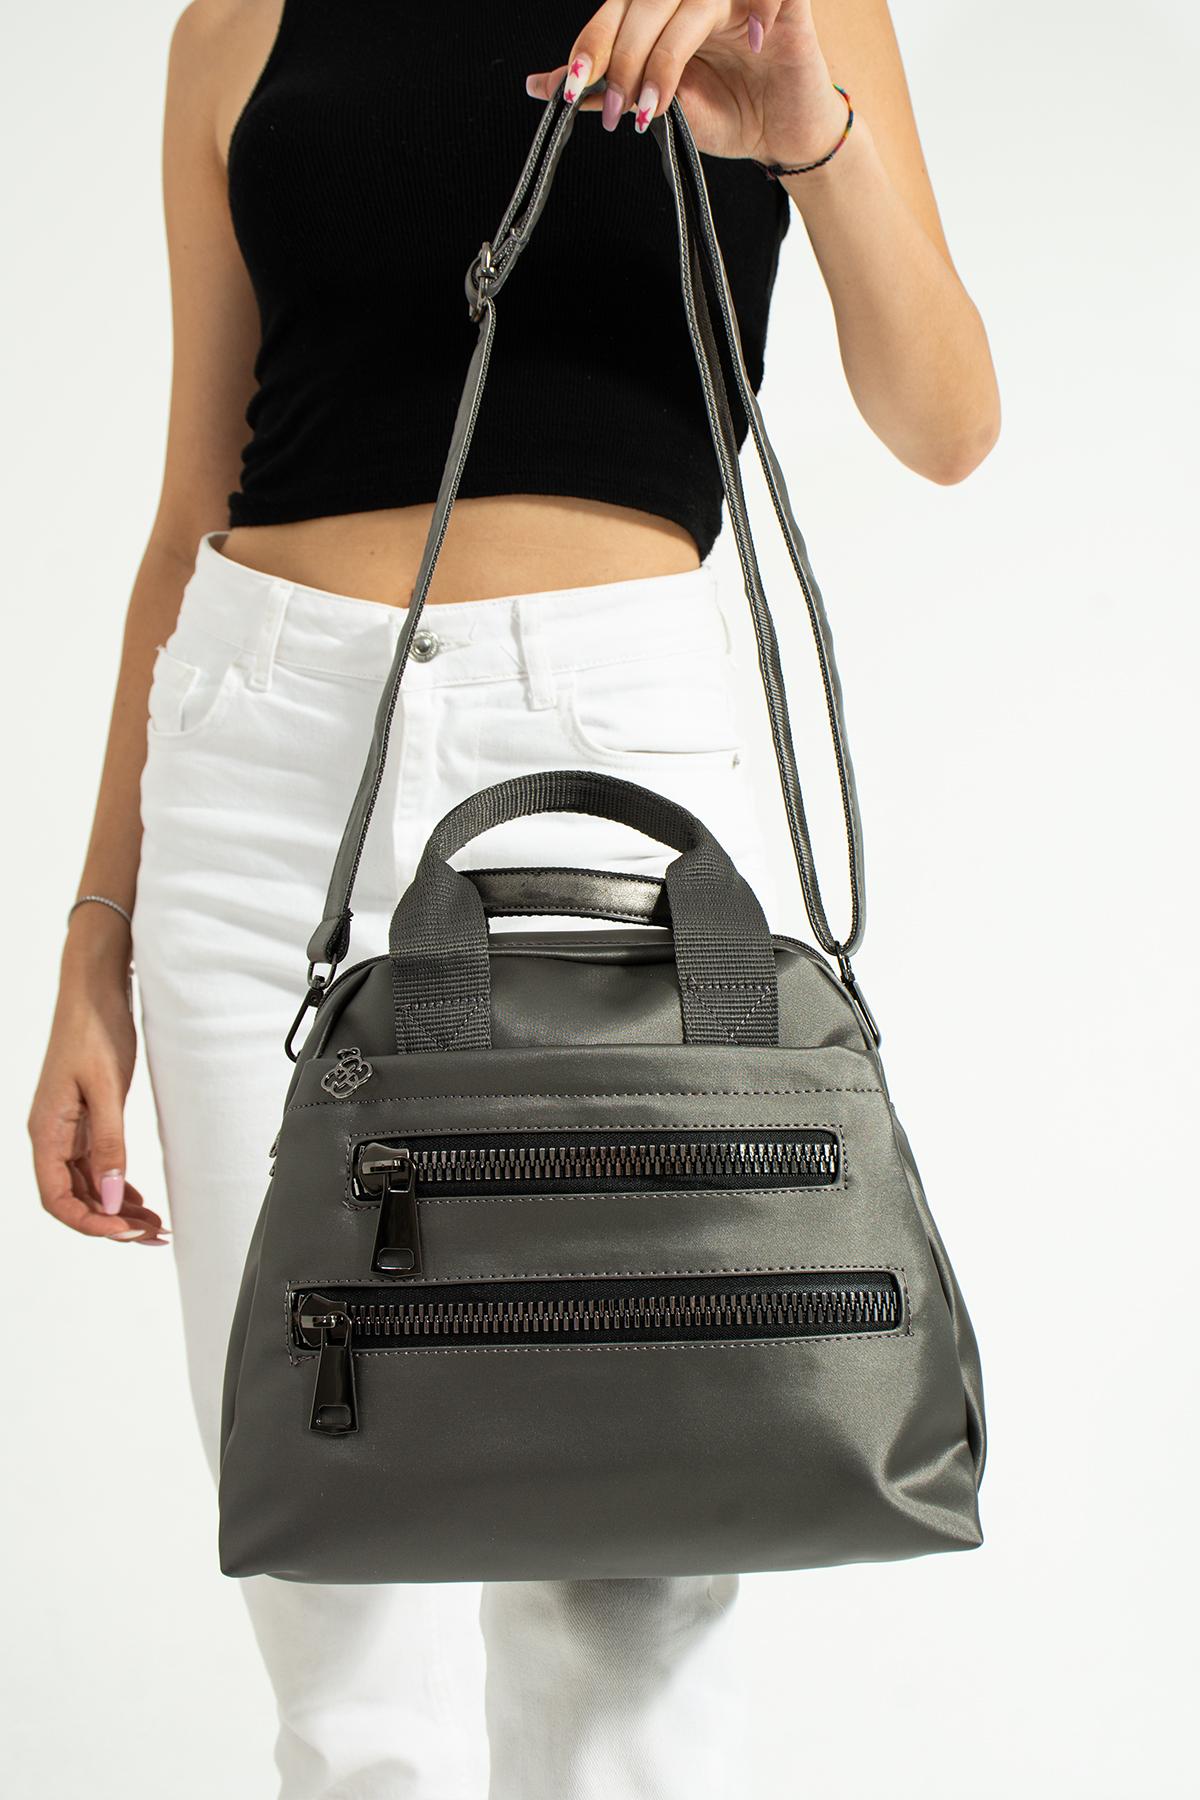 YOGII Fashion Bag Tas Dames schoudertas van satijnleer met meerdere compartimenten en vak VIP Professional